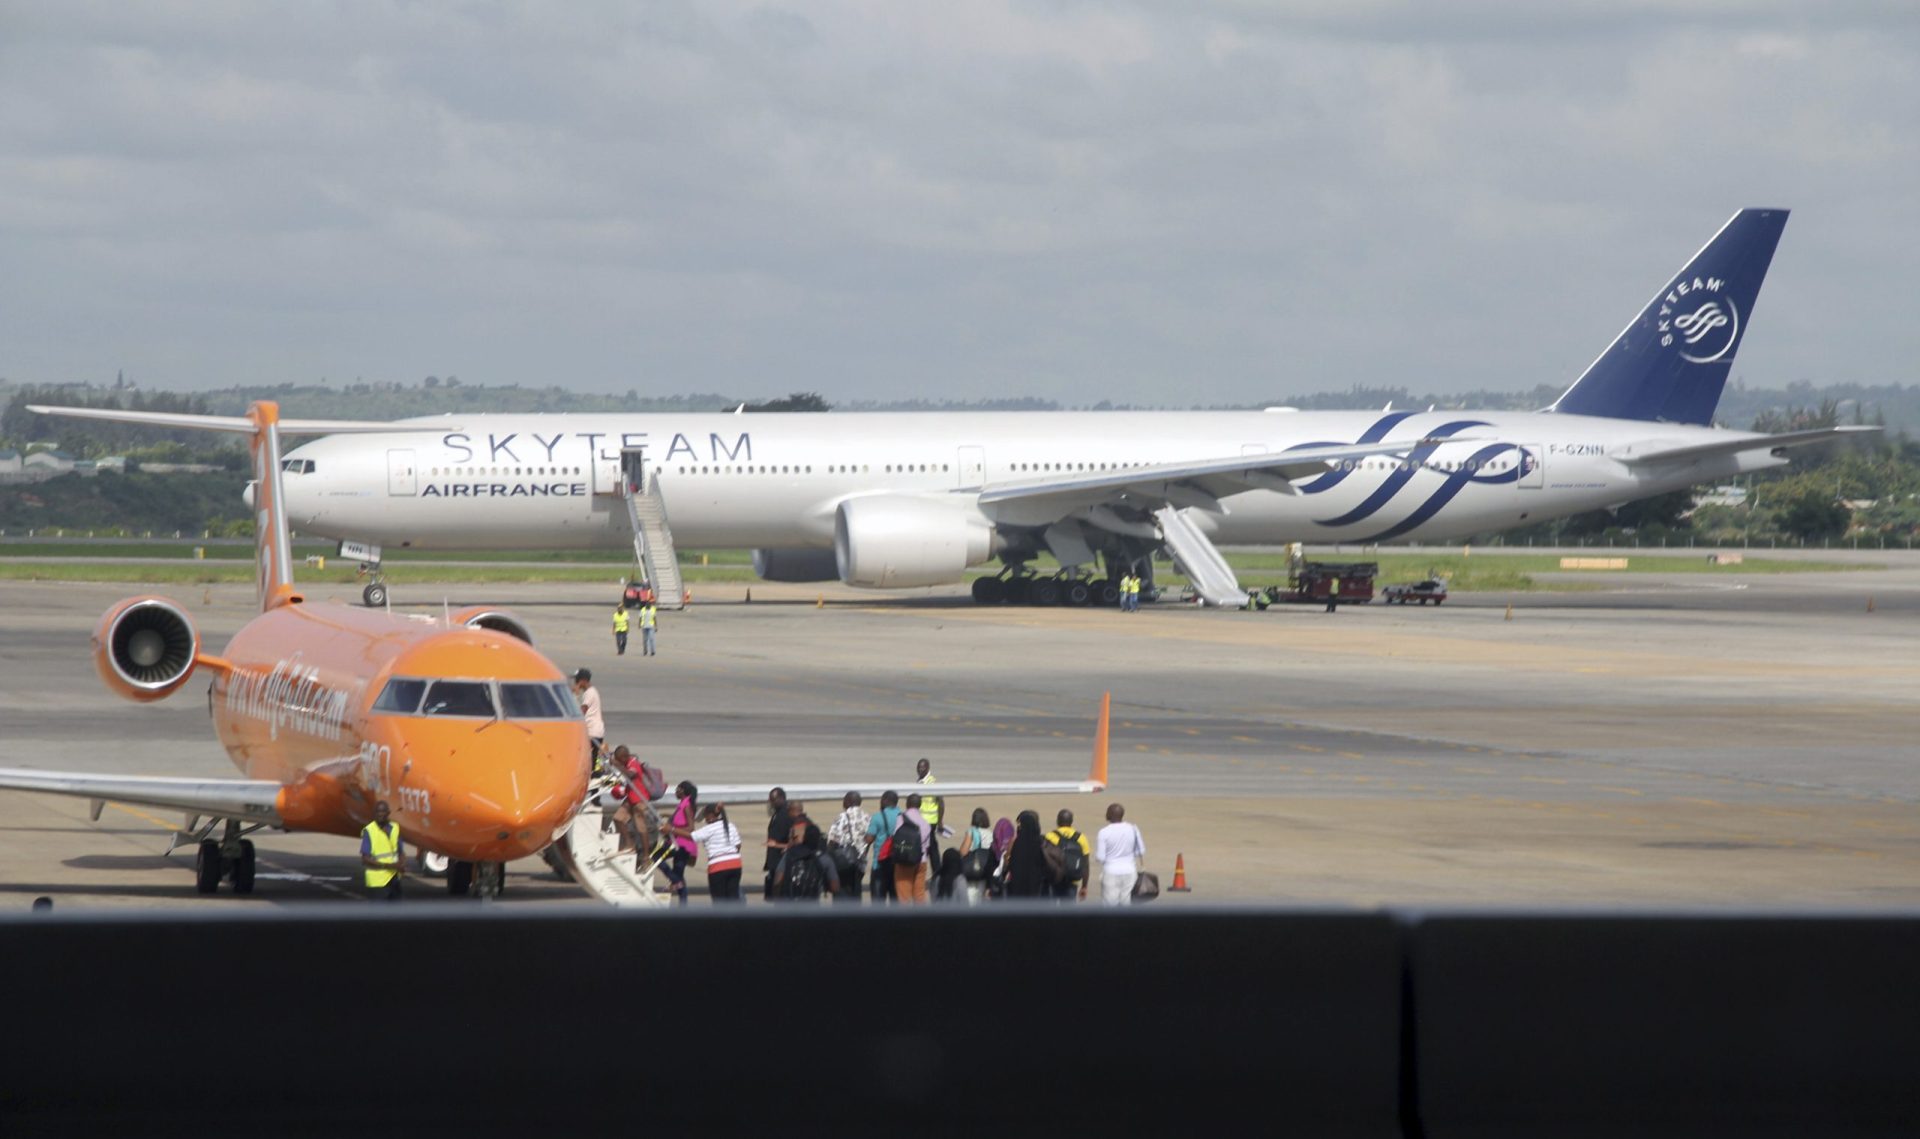 Air France afirma que ameaça de bomba era “falso alarme”